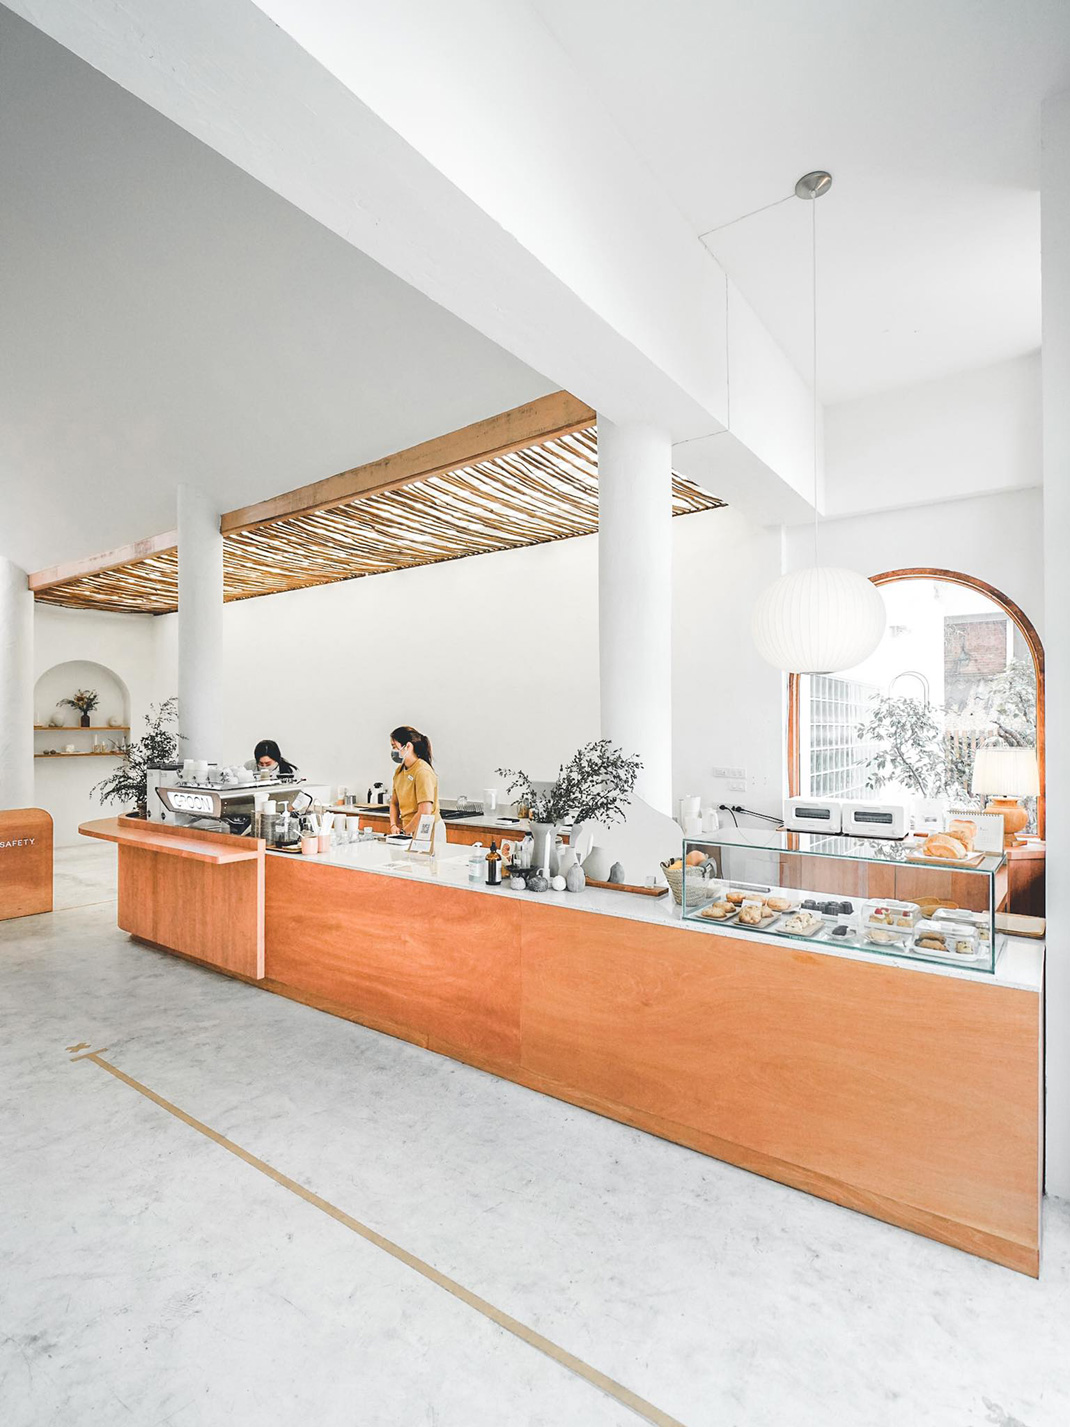 咖啡馆Groon 泰国 清迈 咖啡馆 精致 logo设计 vi设计 空间设计